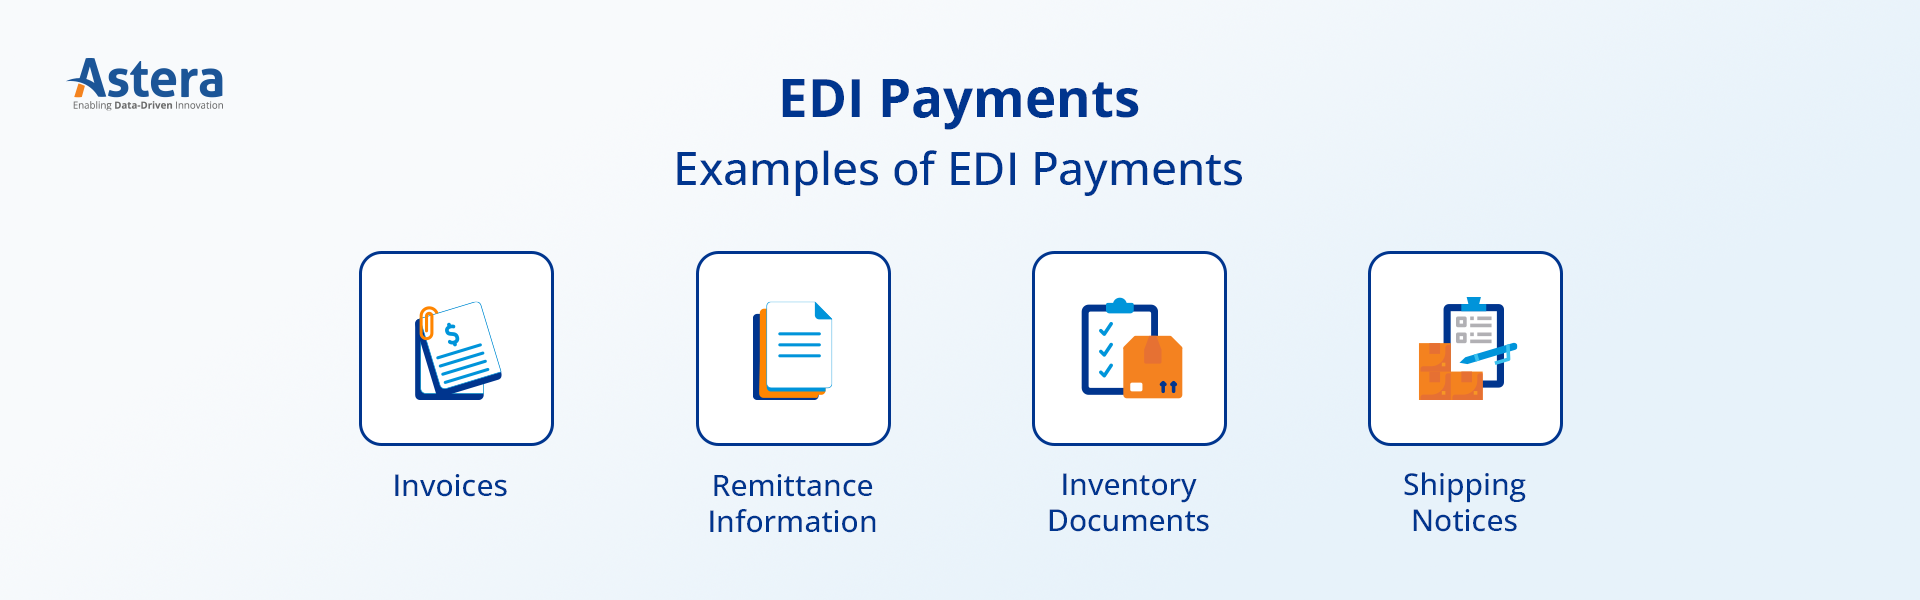 EDI Payments